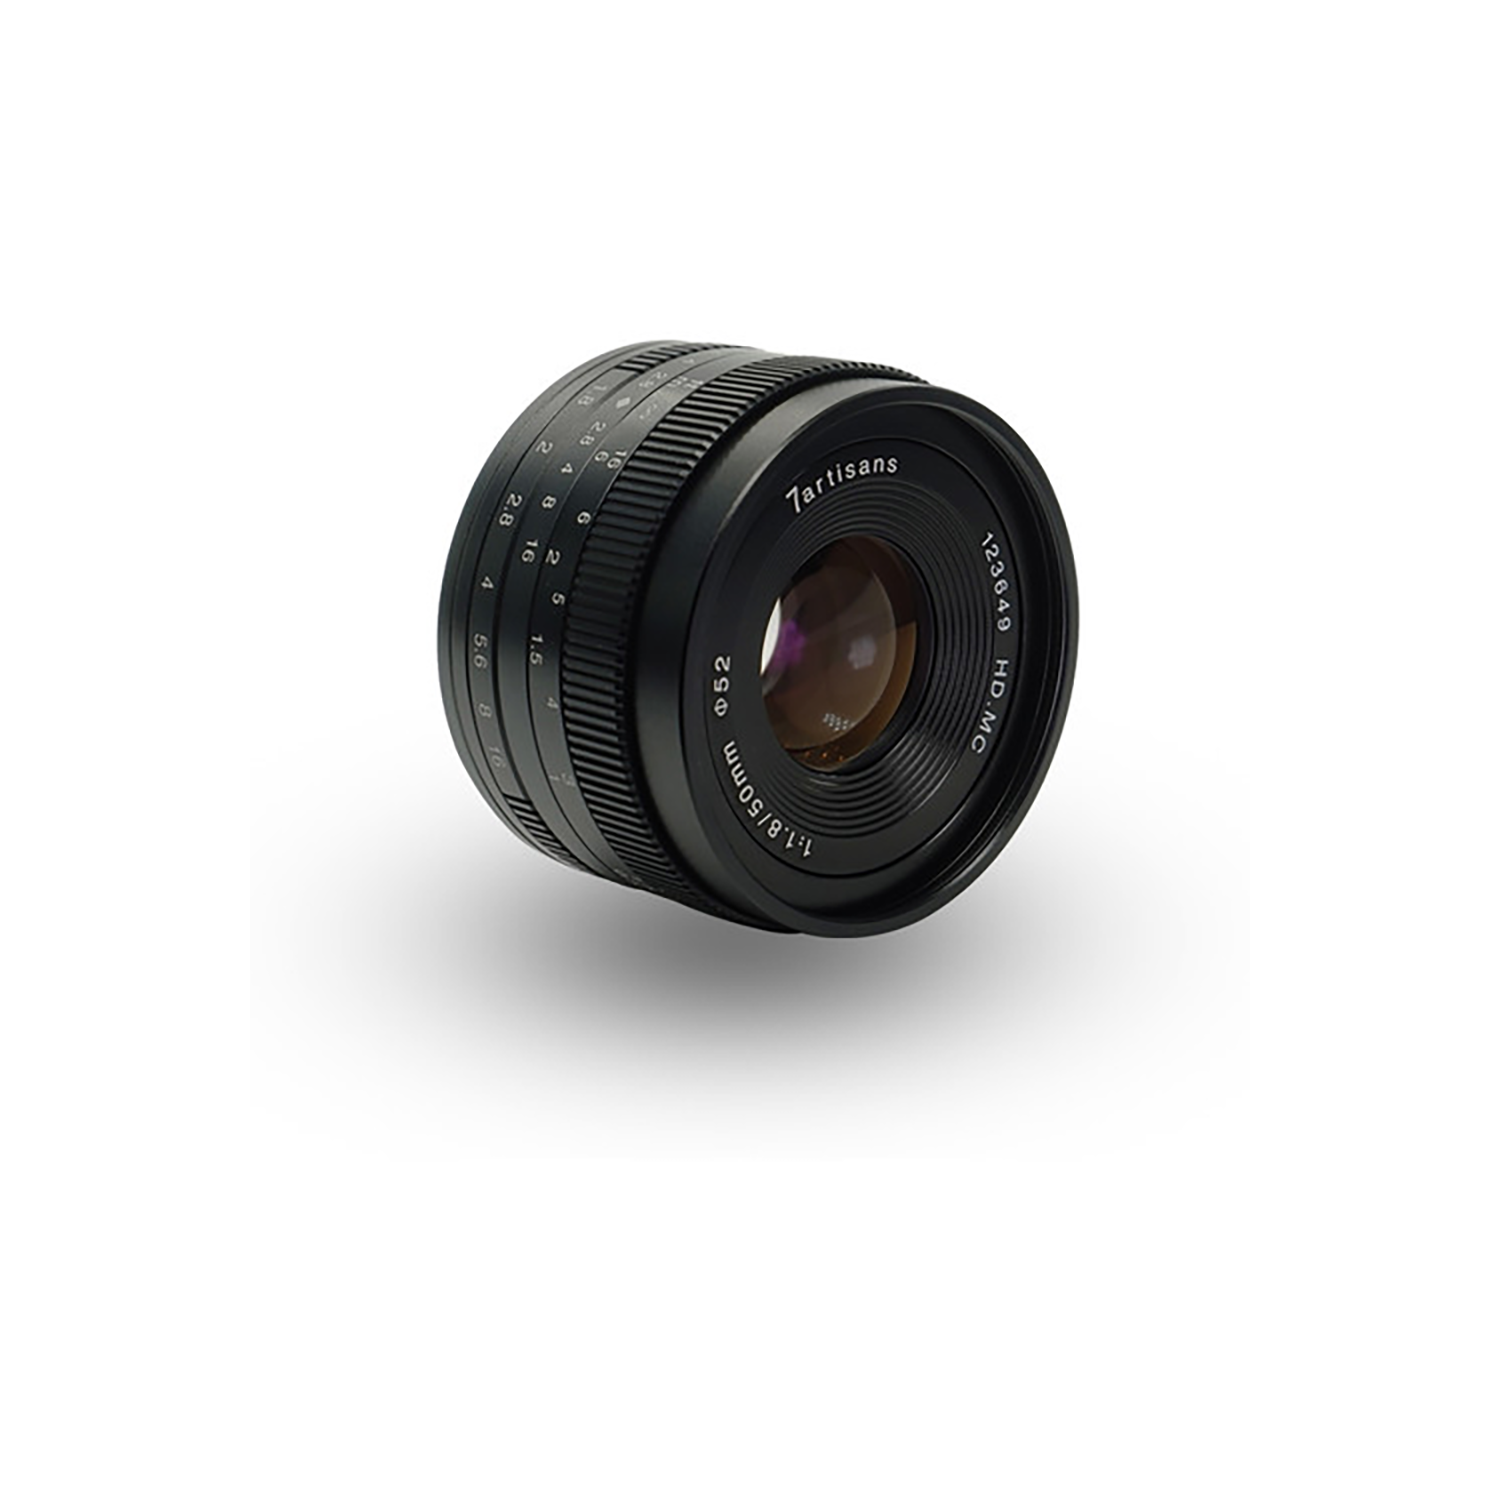 7artisans Photoelectric 50mm f/1.8 Lens for Sony E Mount